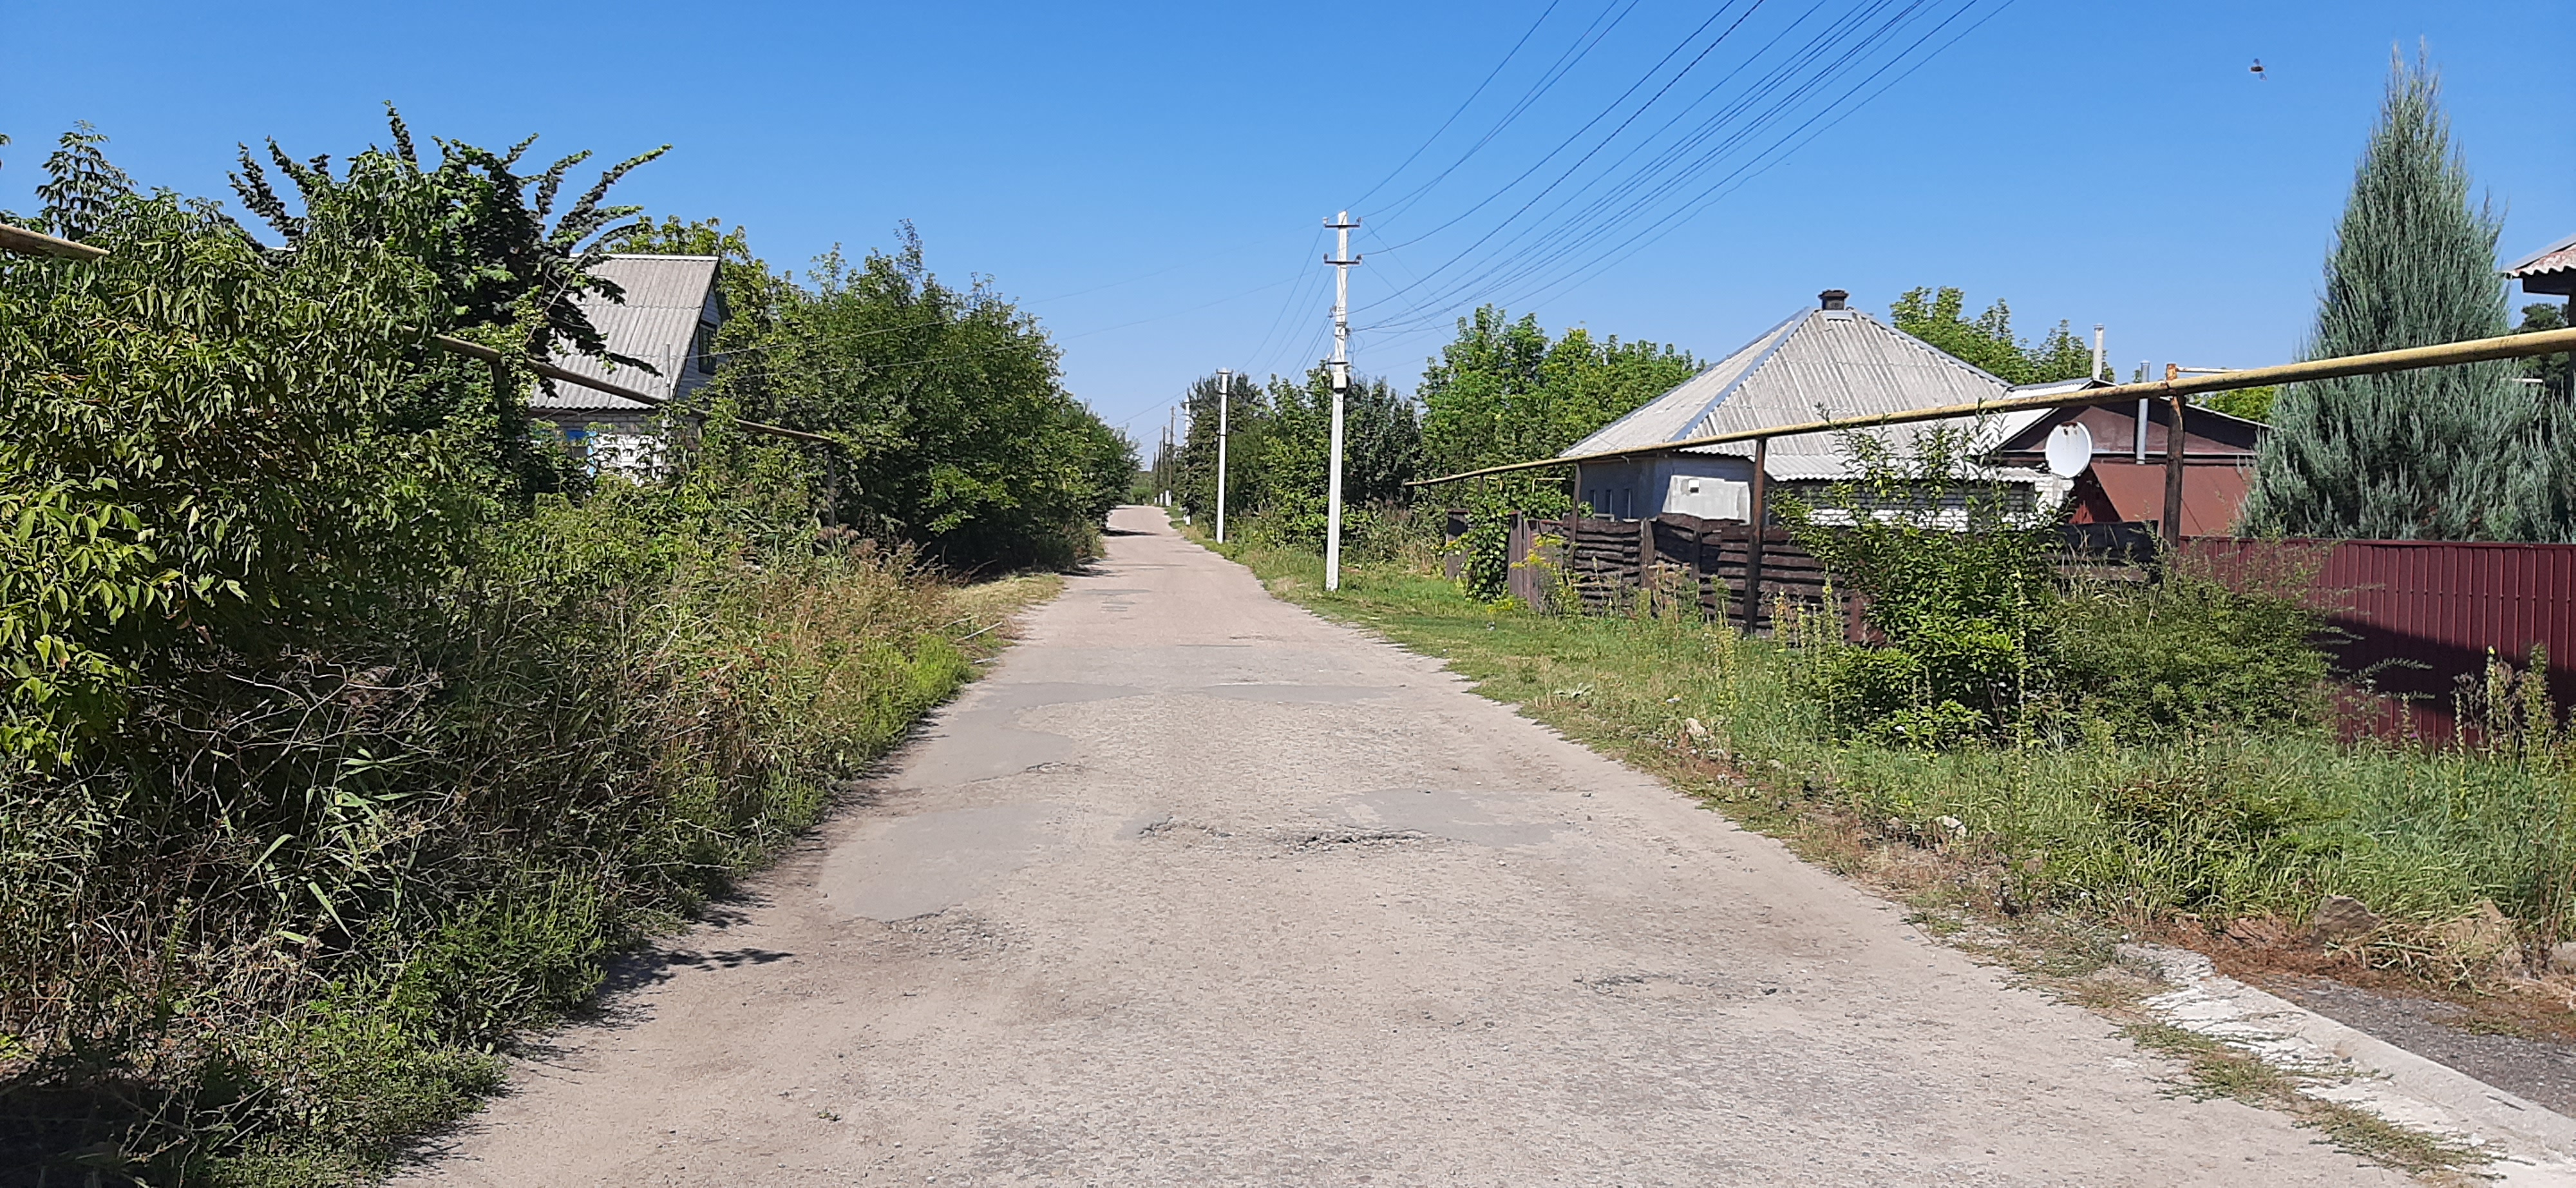 5 кілометрів до дільниці: як голосуватимуть «Підвільхи» на Луганщині